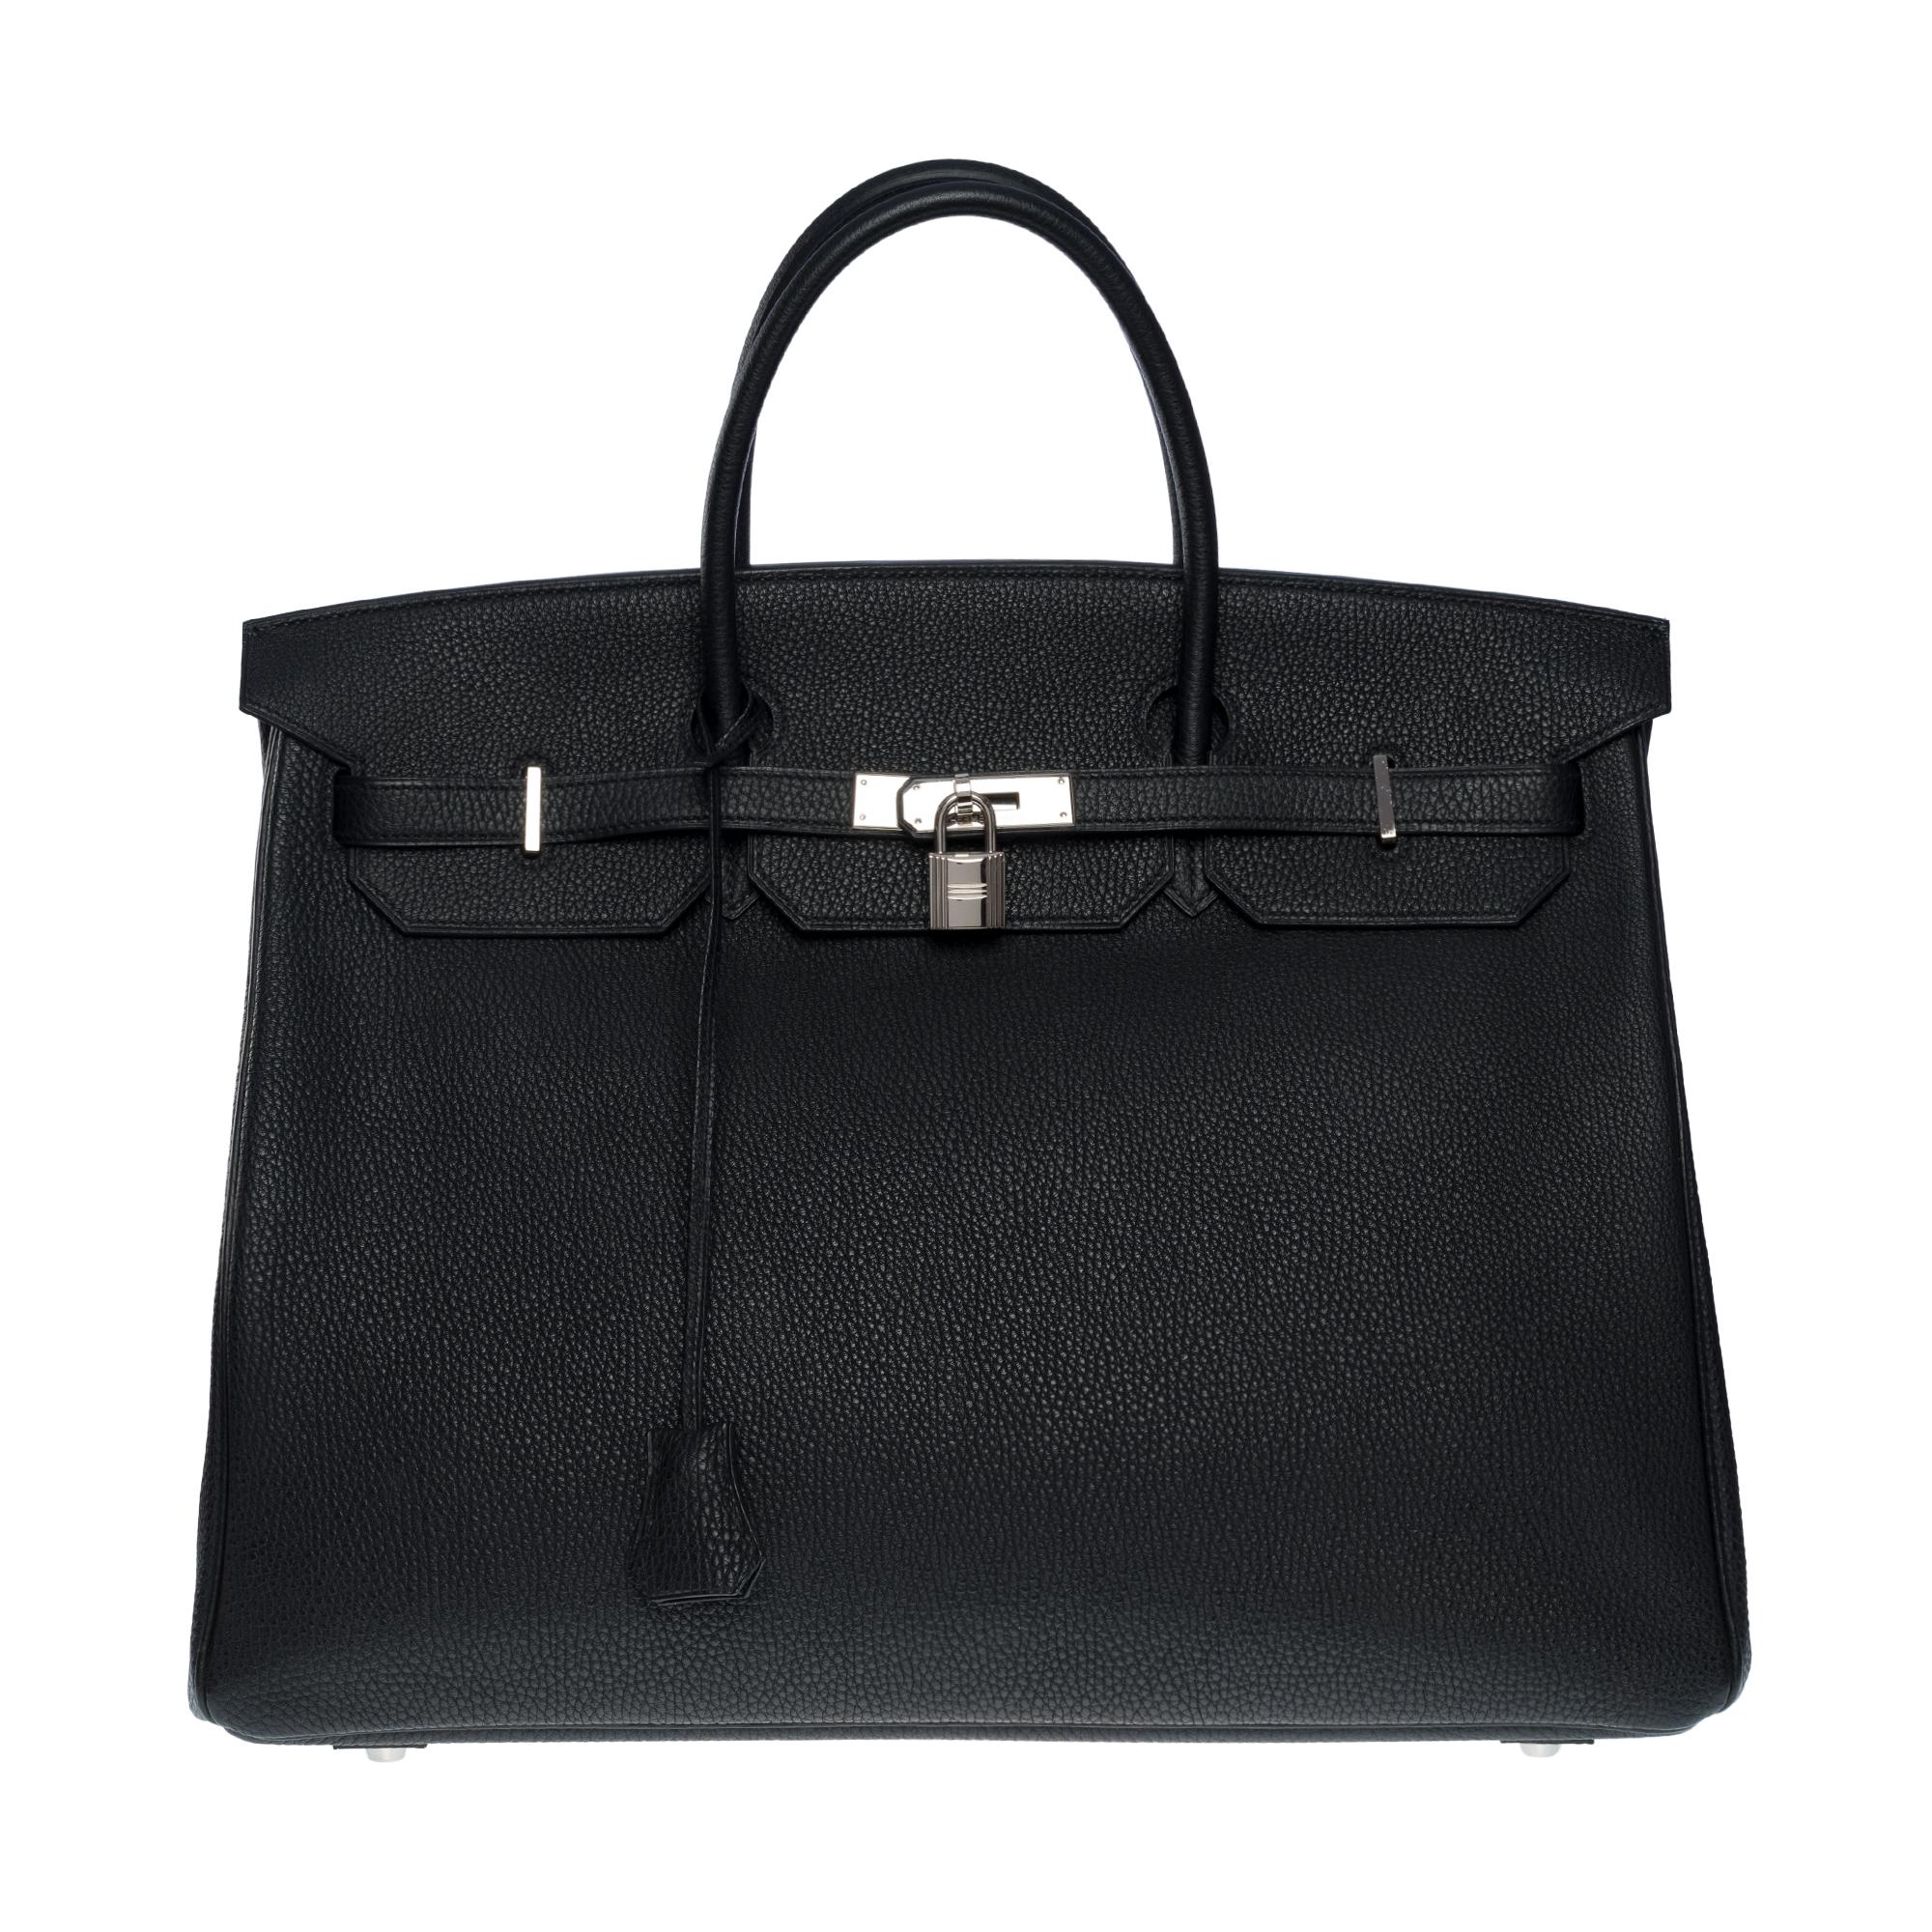 Exceptionnel sac à main Hermès Birkin 40 en cuir togo noir, accessoires en métal argenté palladium, double anse en cuir noir pour un portage à la main.
Fermeture à rabat
Doublure en cuir noir, une poche zippée, une poche plaquée
Signature : 